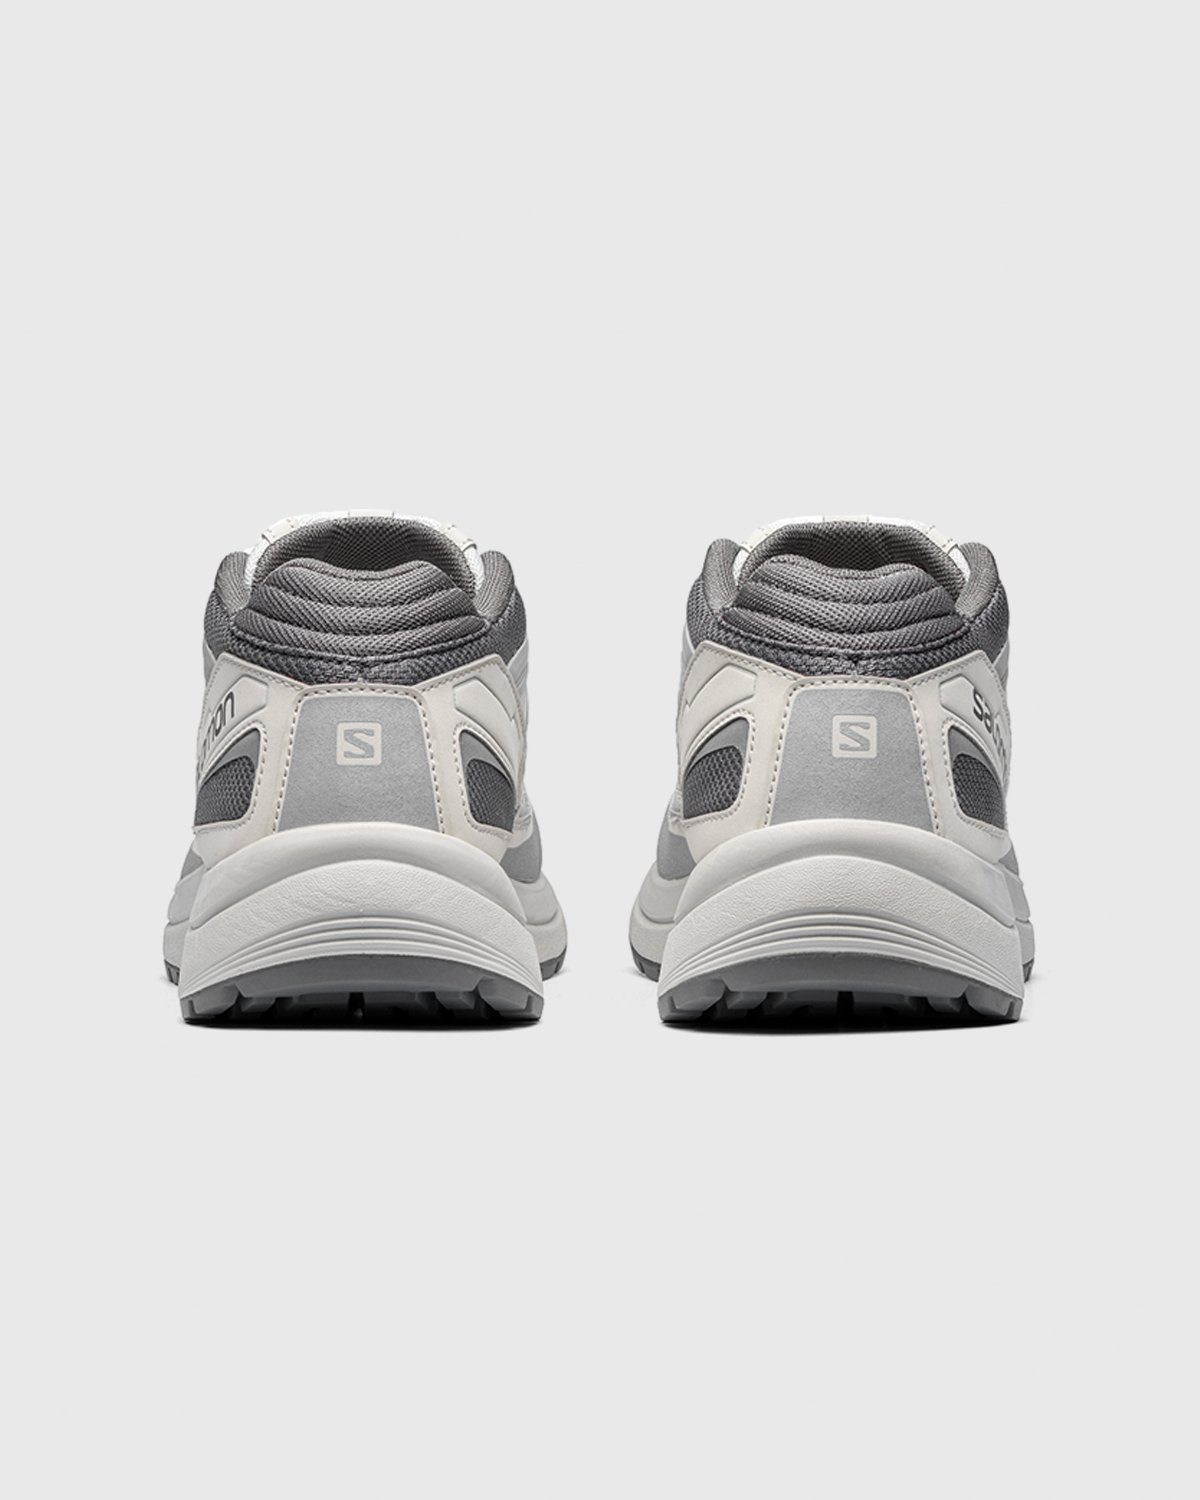 Salomon - Odyssey 1 Advanced Grey - Footwear - Grey - Image 3